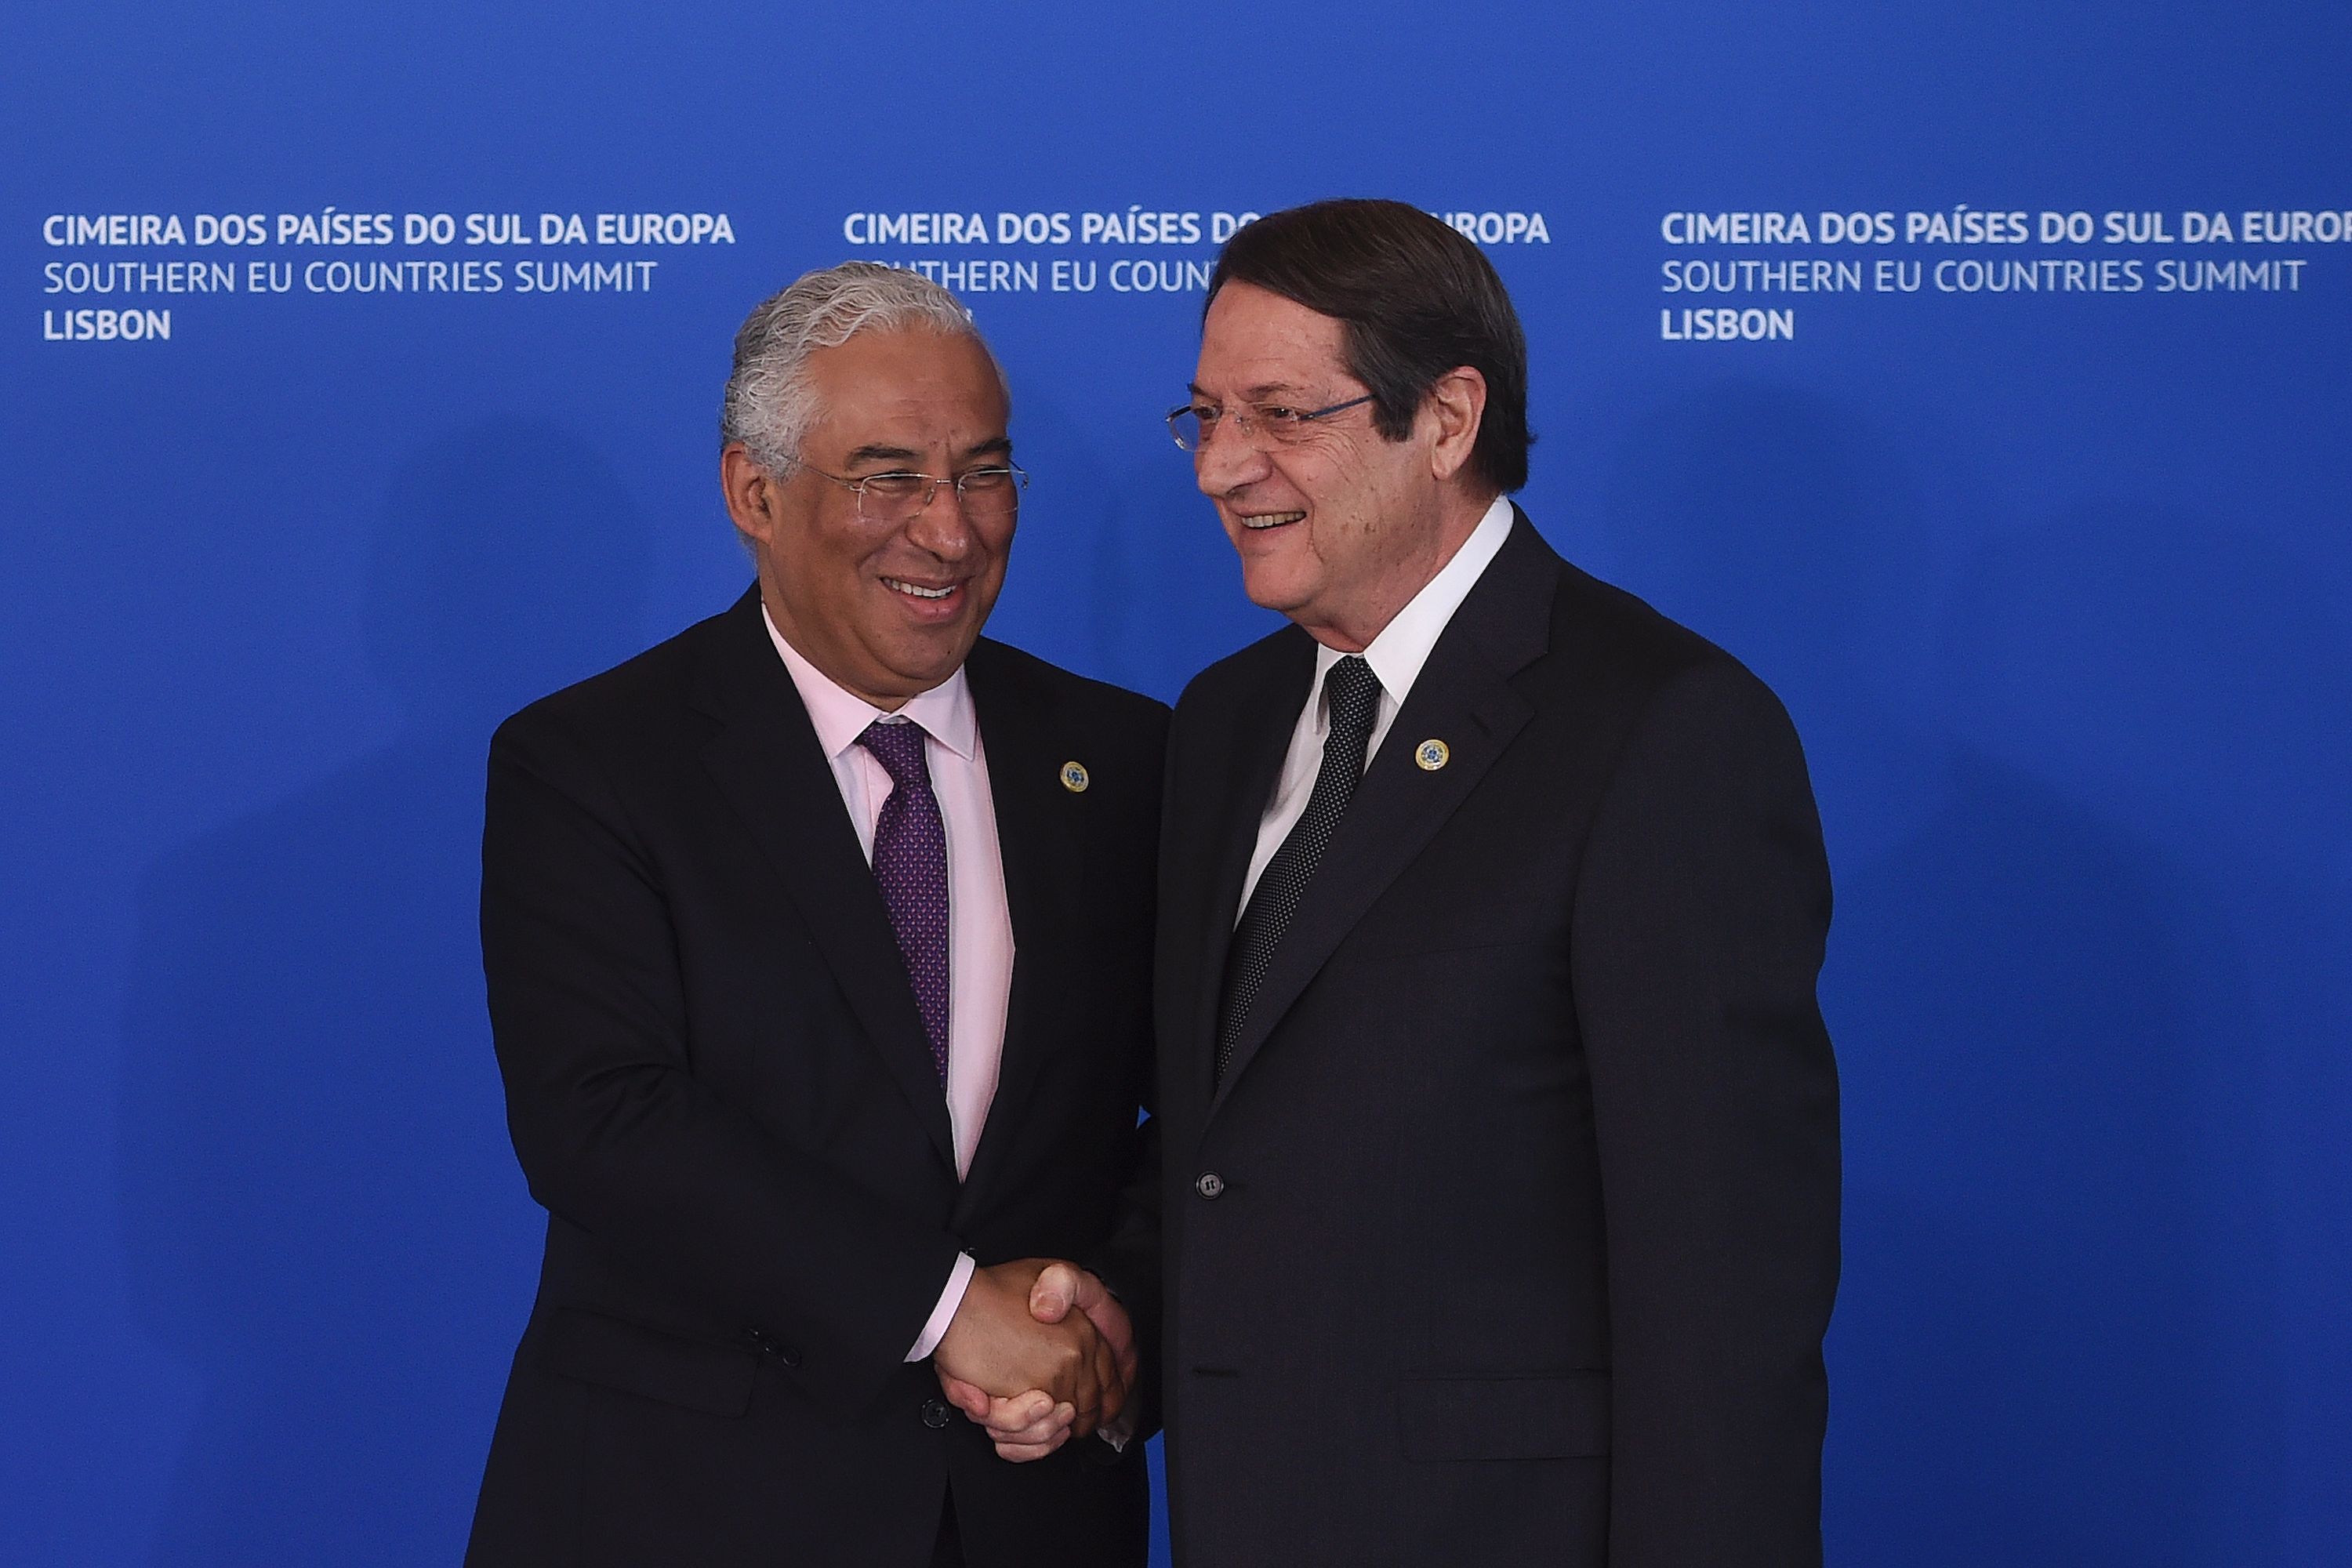 رئيس الوزراء البرتغالي أنطونيو كوستا يستقبل رئيس قبرص نيكوس أناستاسياديس